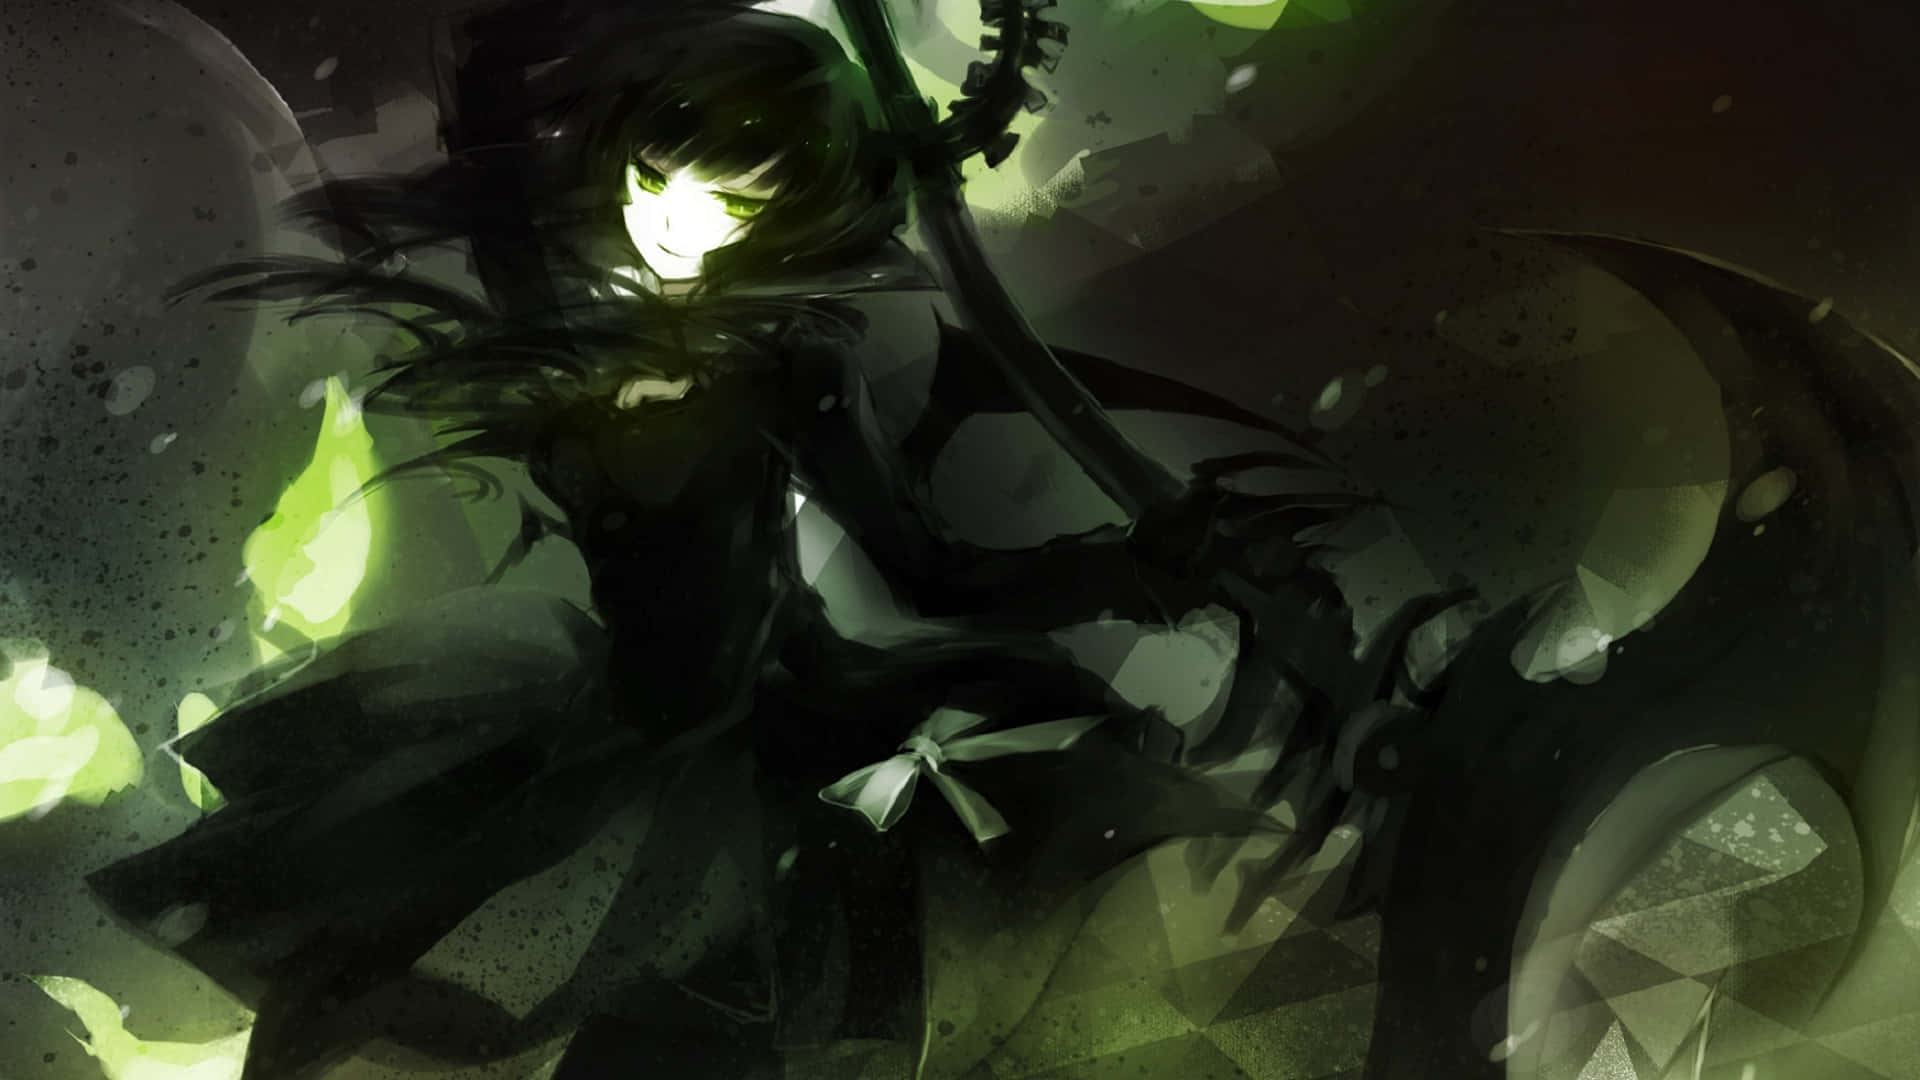 Dark Anime Background